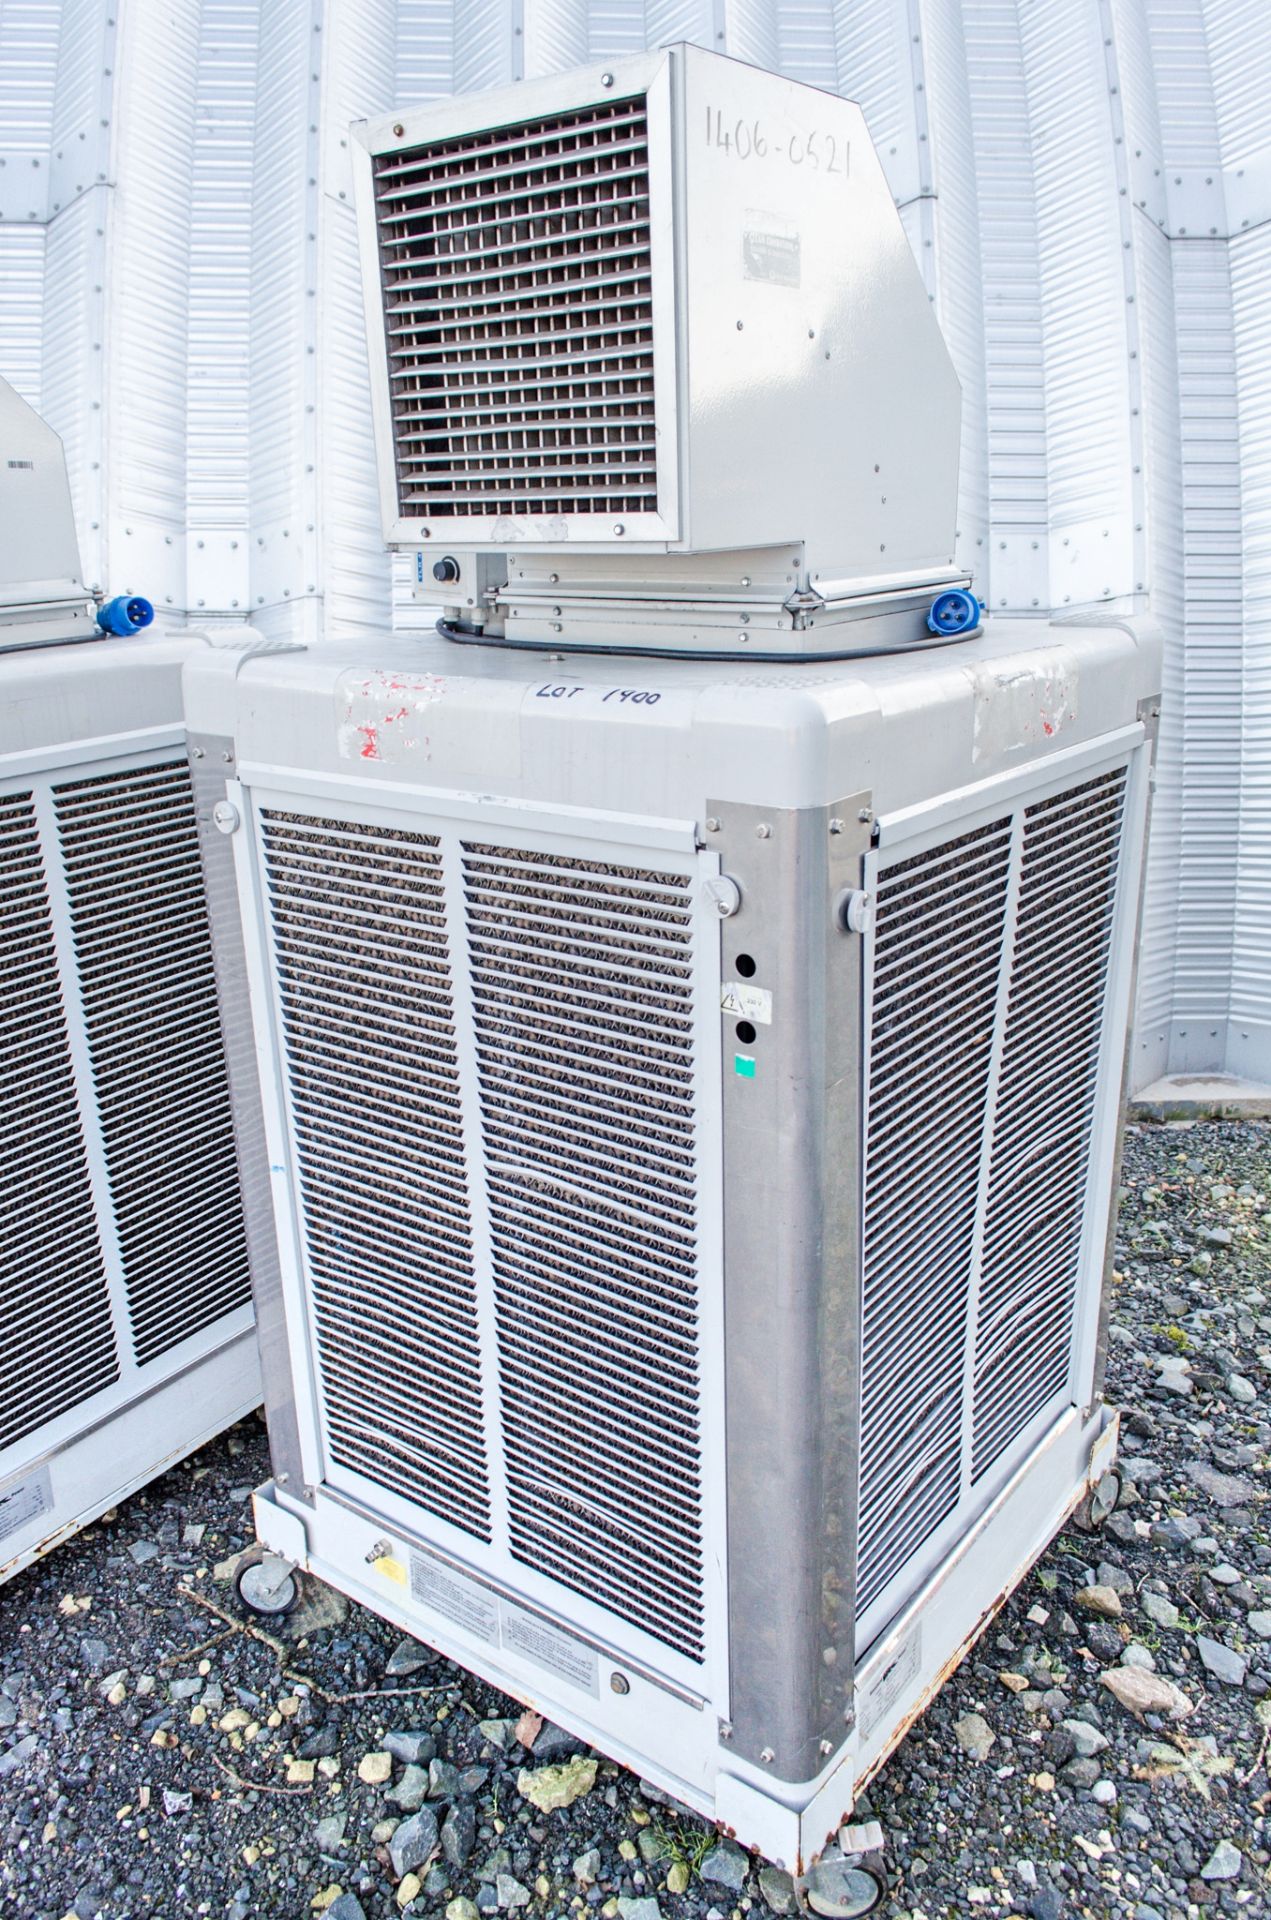 SP-EC05 240v evaporative cooler